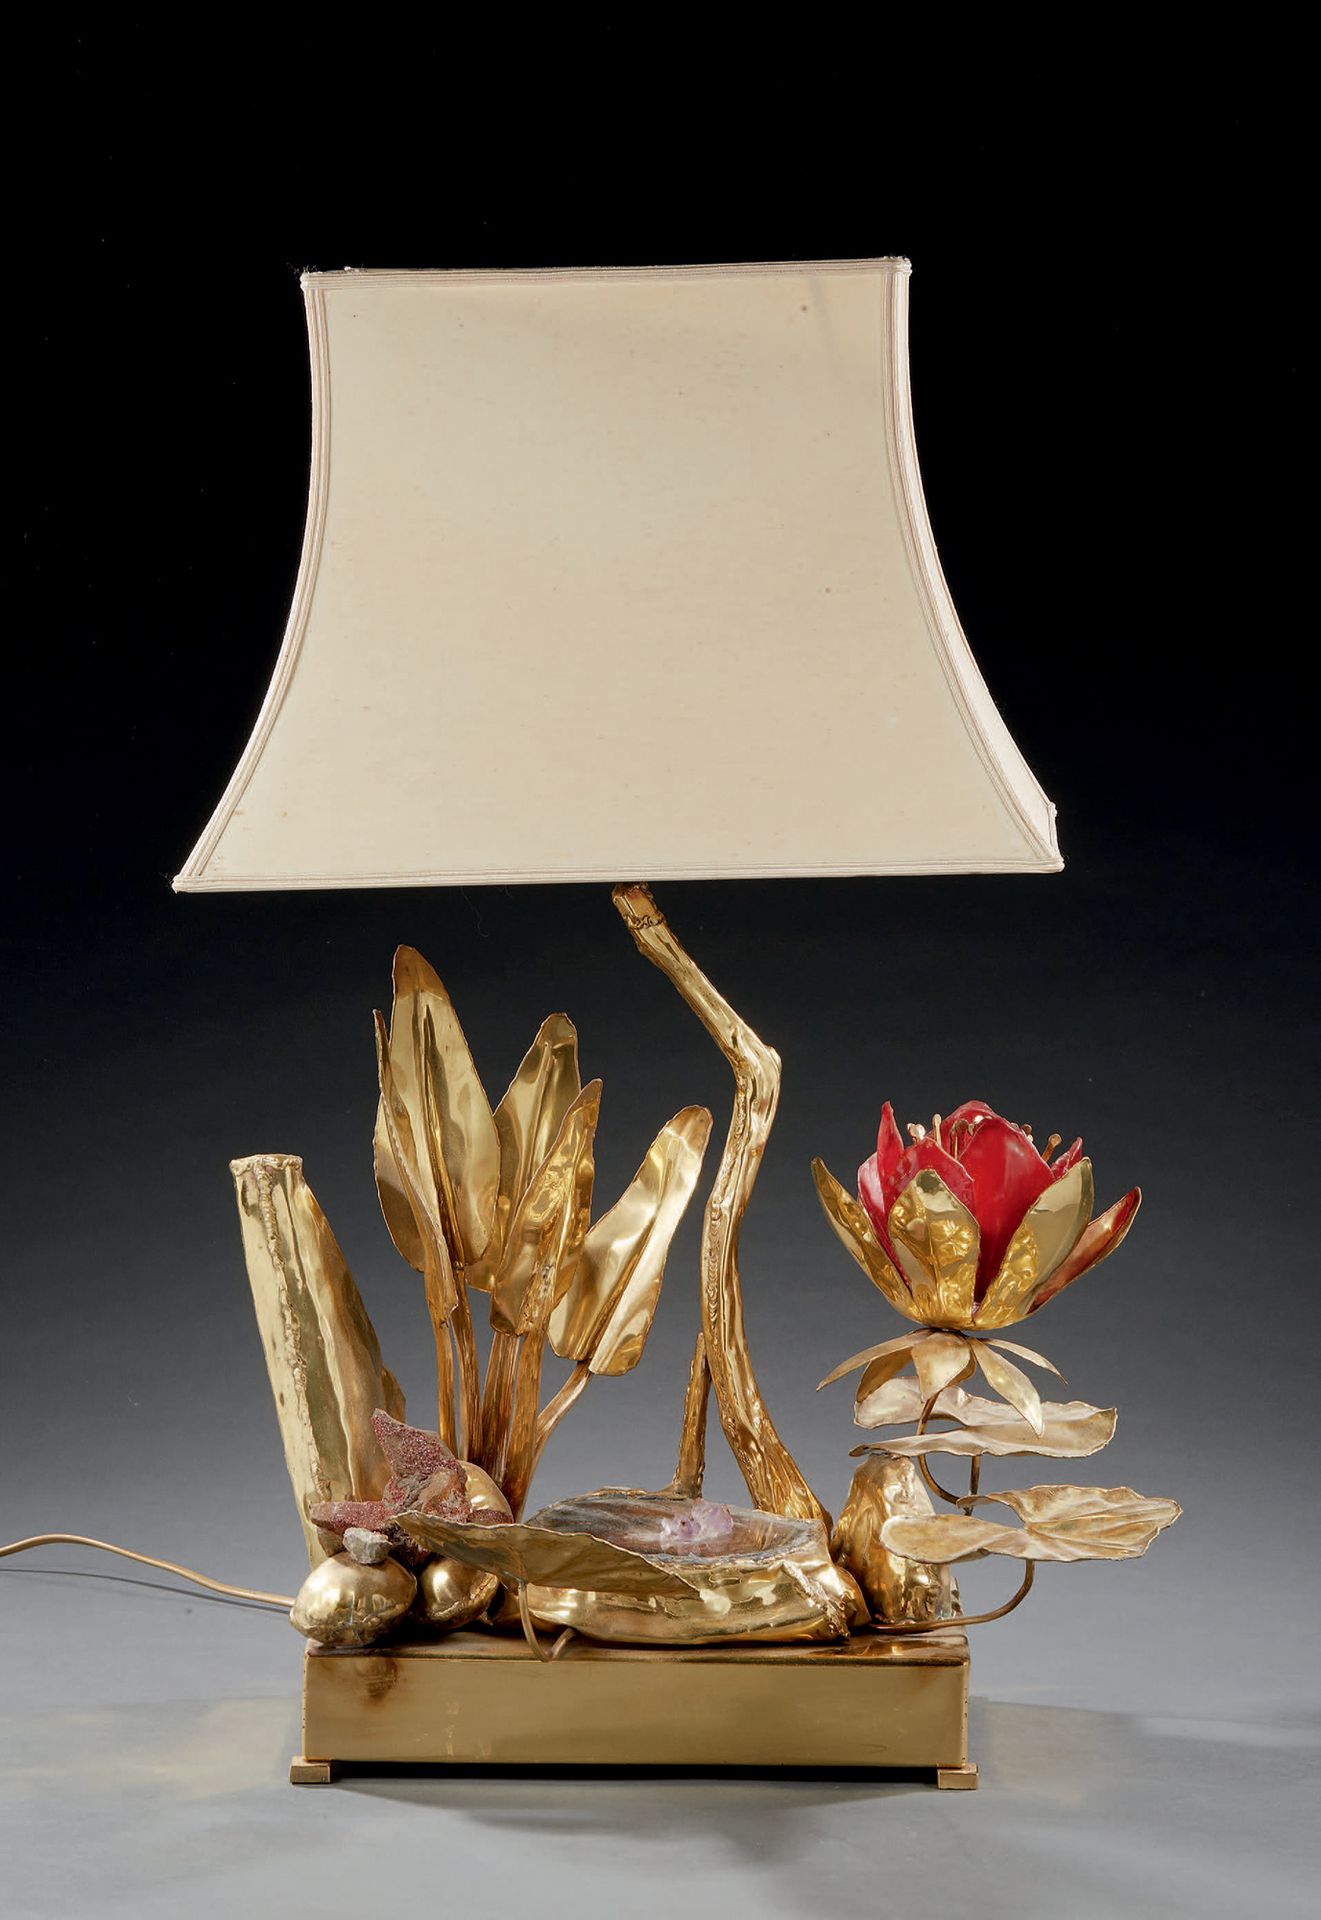 TRAVAIL DES ANNÉES 1970 
Lampada in metallo dorato, pietra dura e vetro rosso co&hellip;